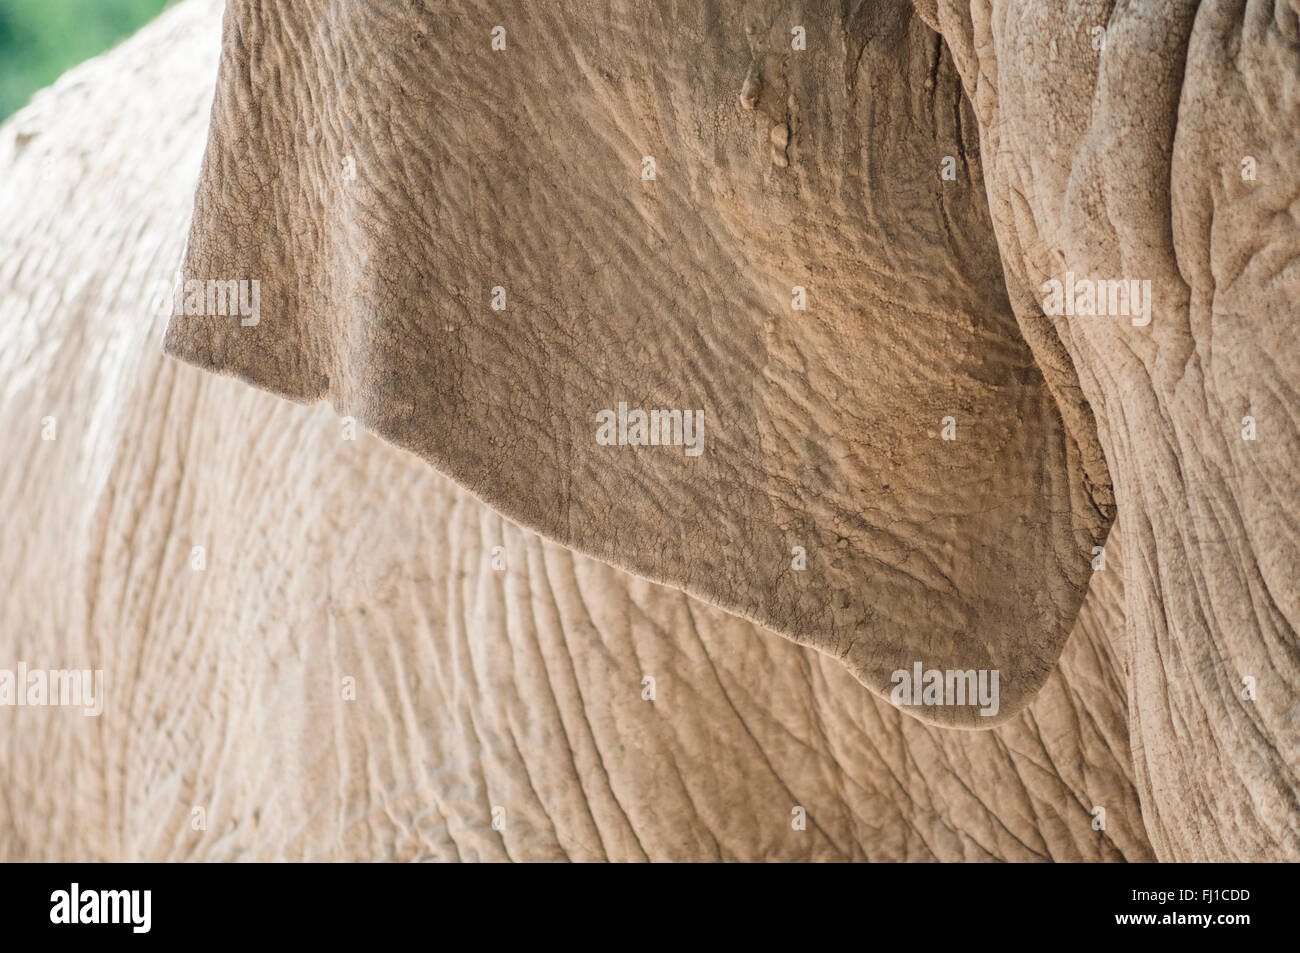 Schließen Sie herauf Bild von einem Elefanten Haut Textur Hintergrund Stockfoto